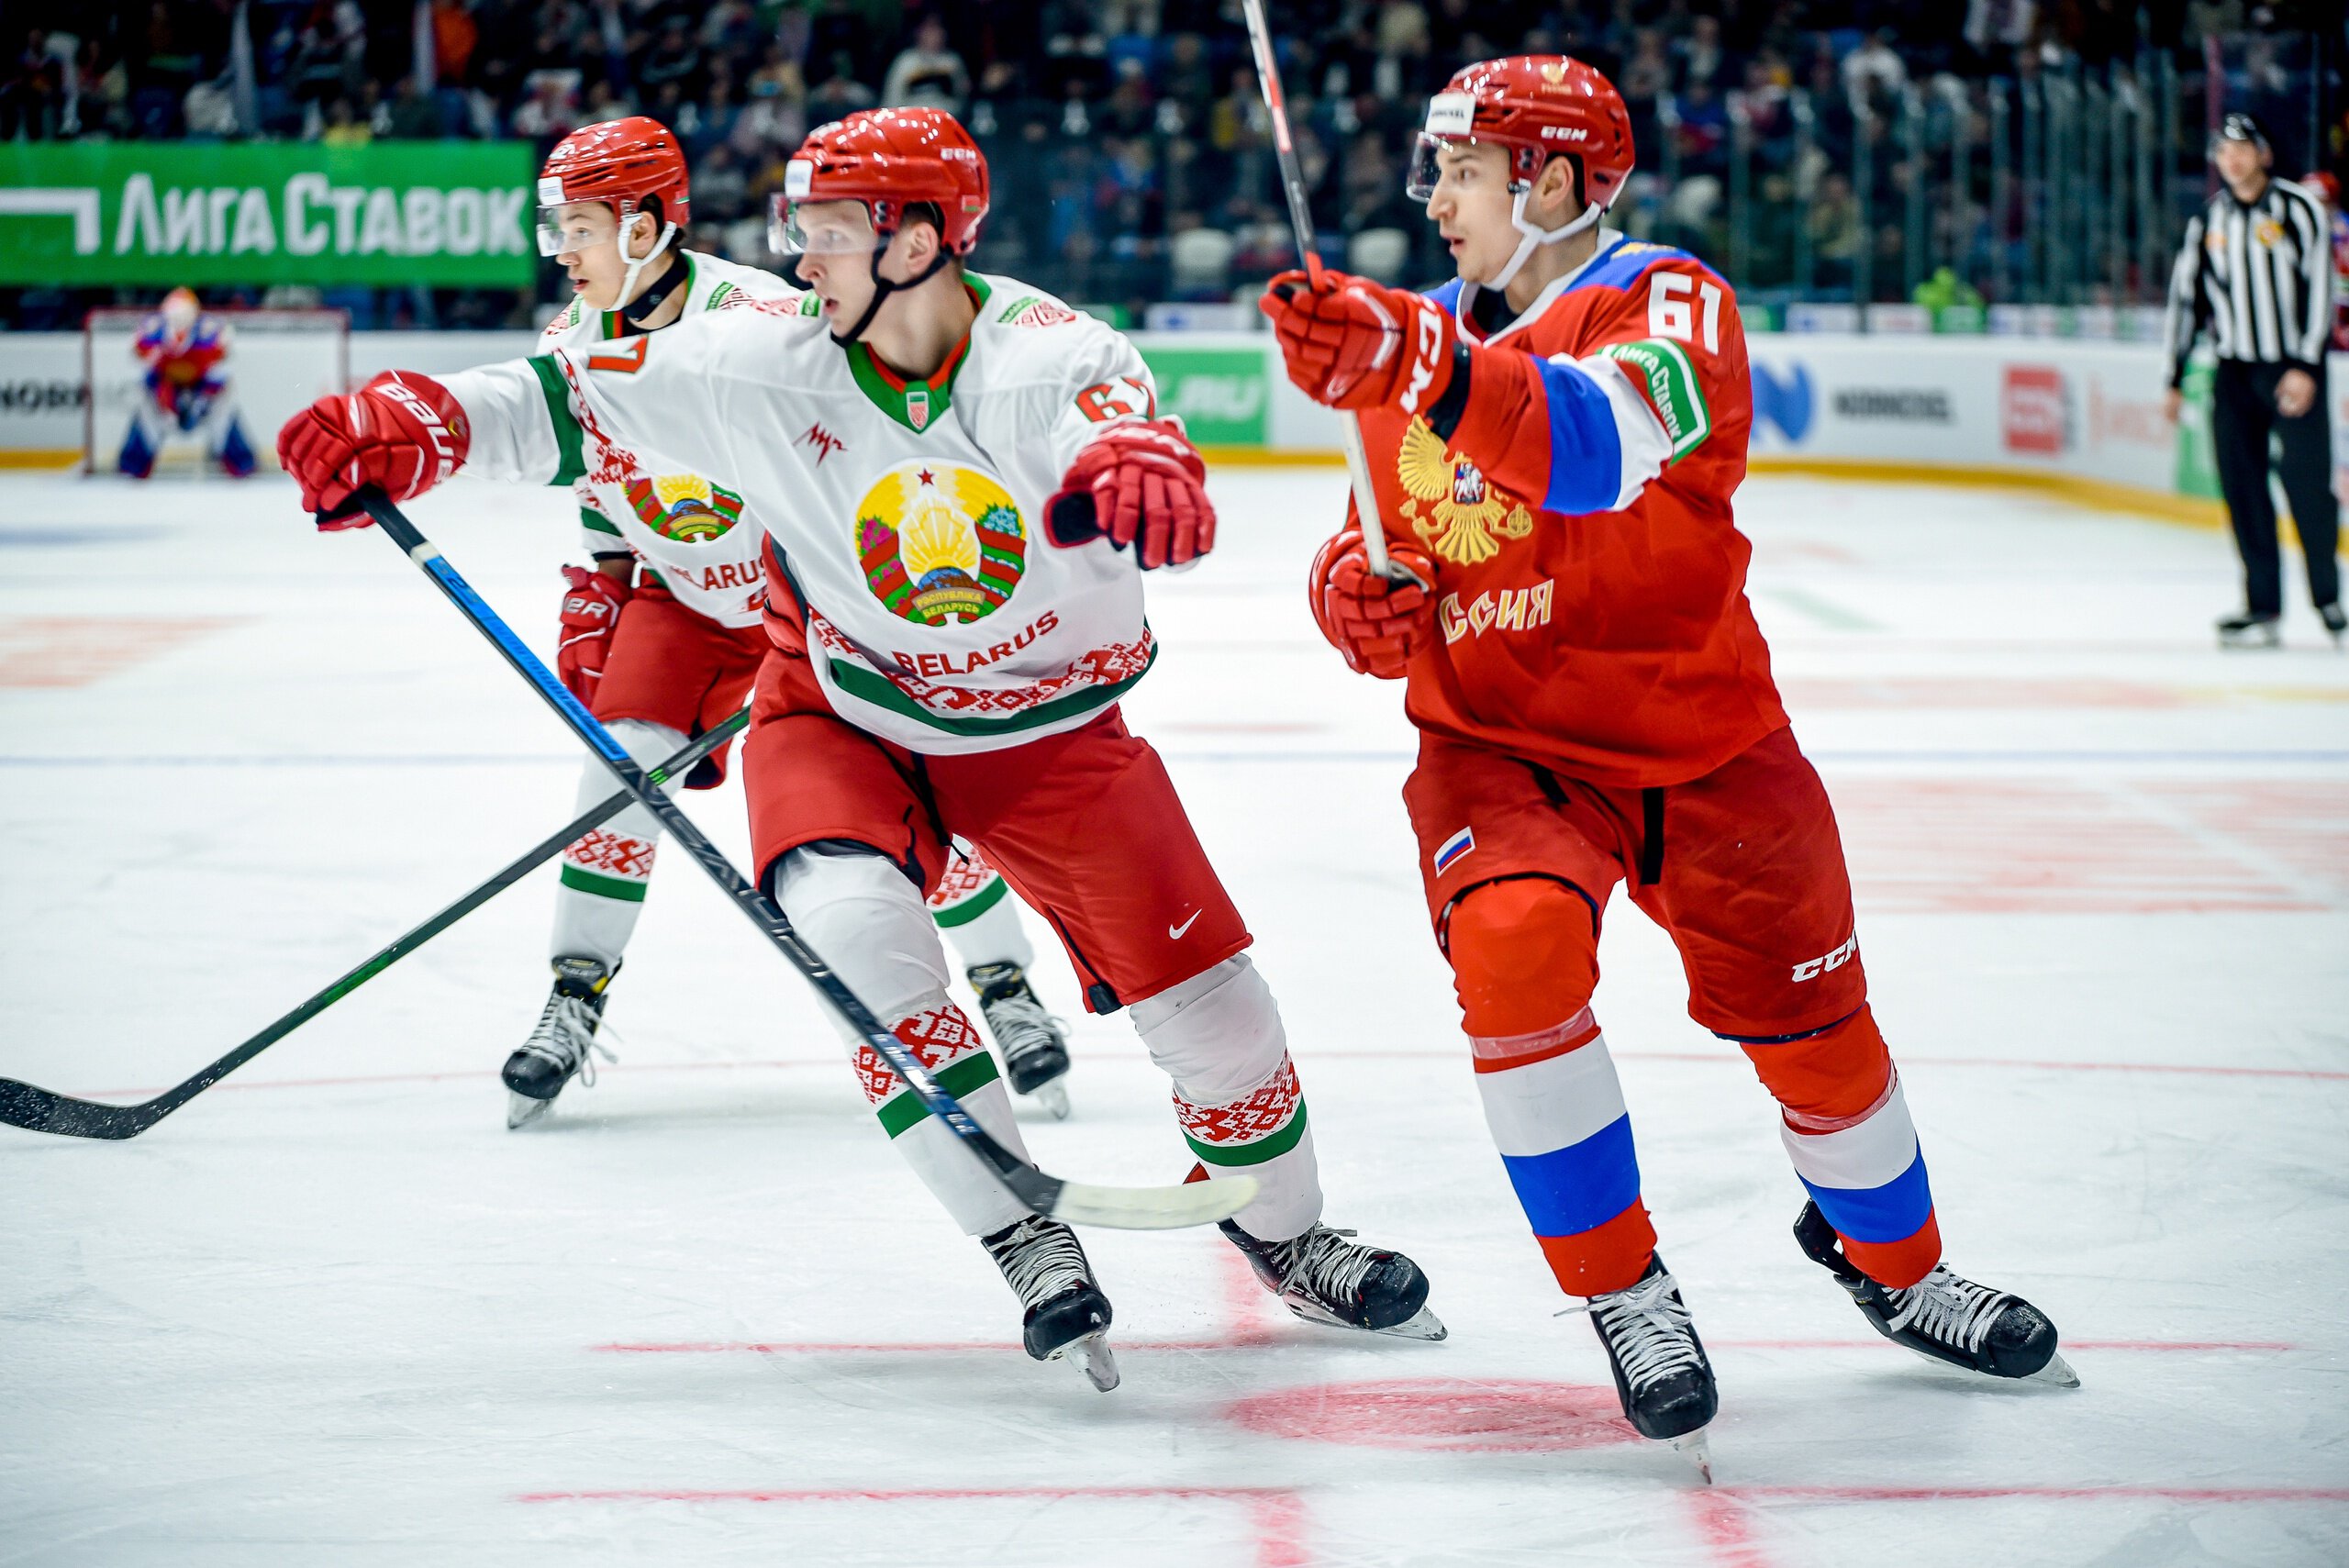 В чемпионате Беларуси сыграет команда из Смоленска. Славутич подал заявку в прошлом году